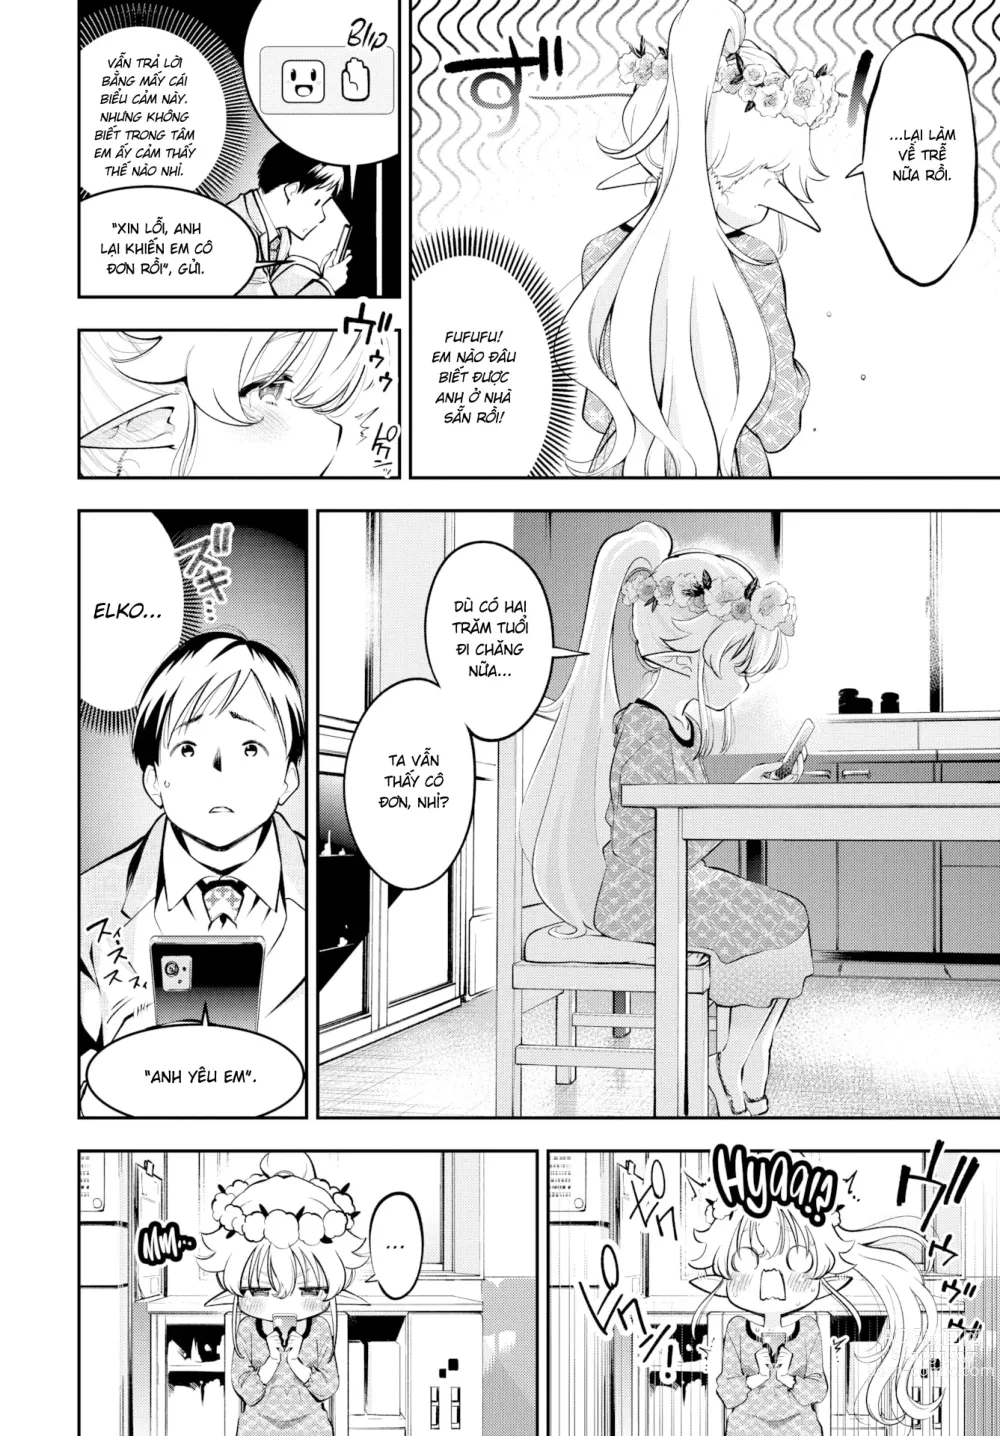 Page 50 of doujinshi Cô Vợ Elf Loli Đã 2̶0̶9̶